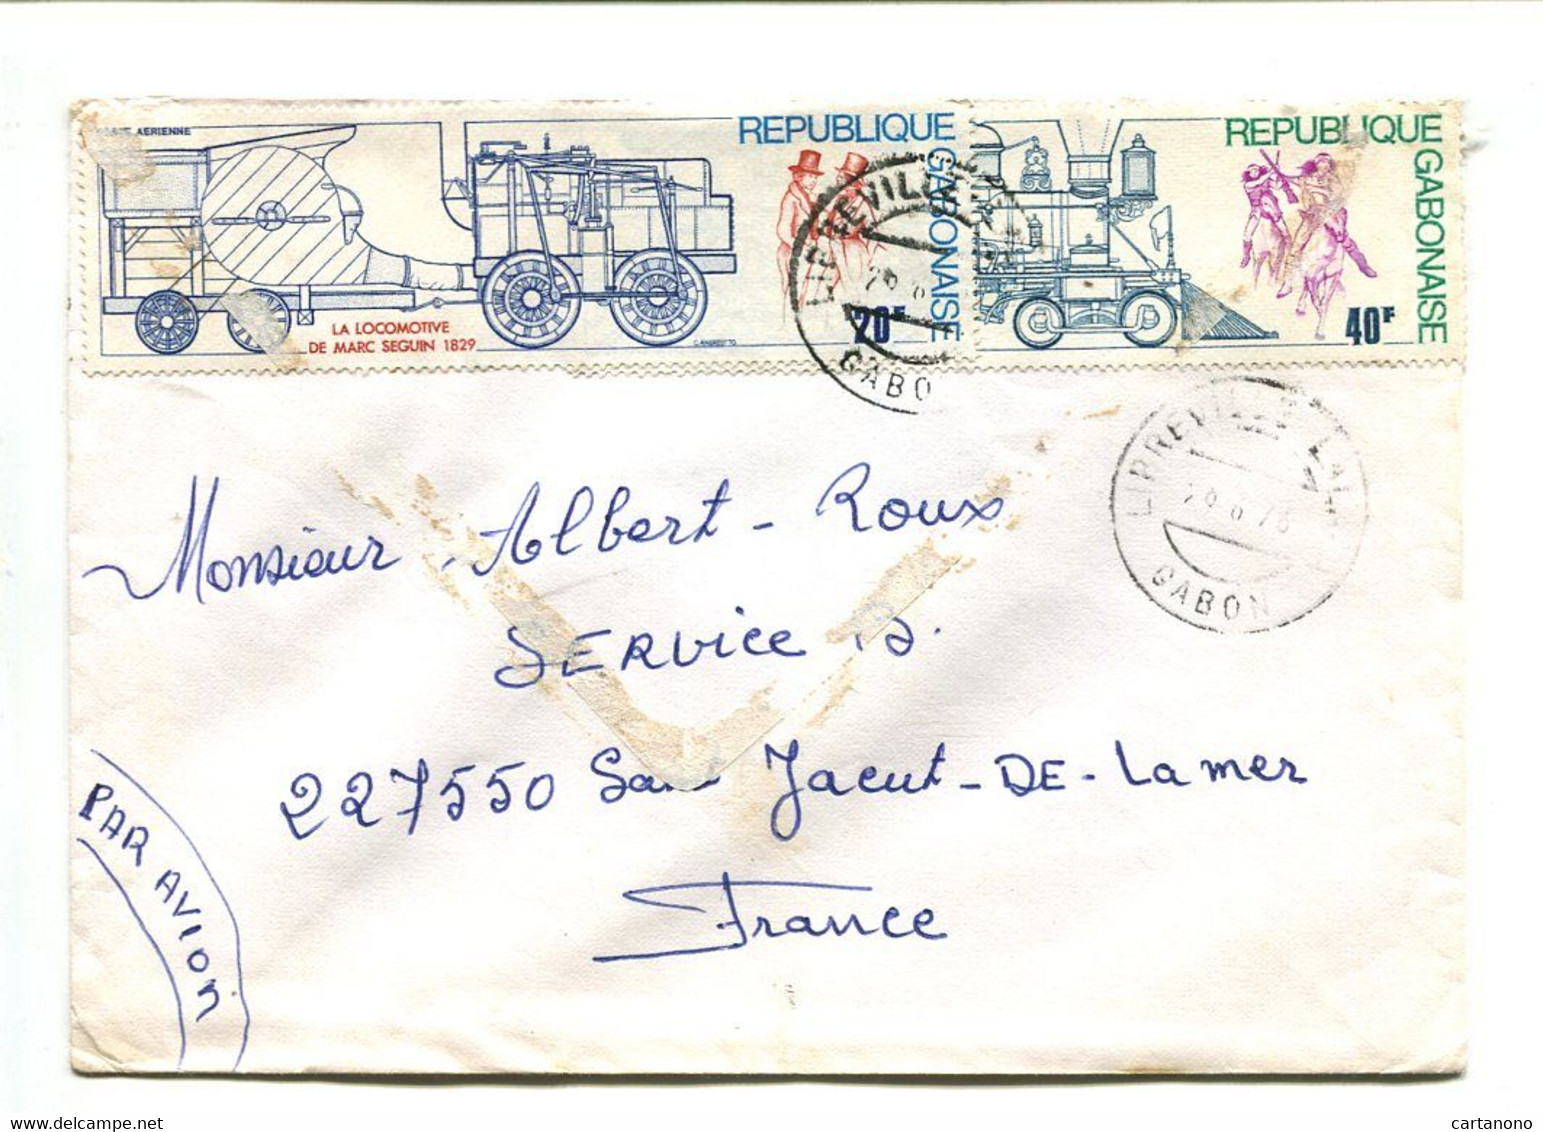 GABON Libreville1978 - Affranchissement Sur Lettre Par Avion -  Train Locomotive - Gabun (1960-...)